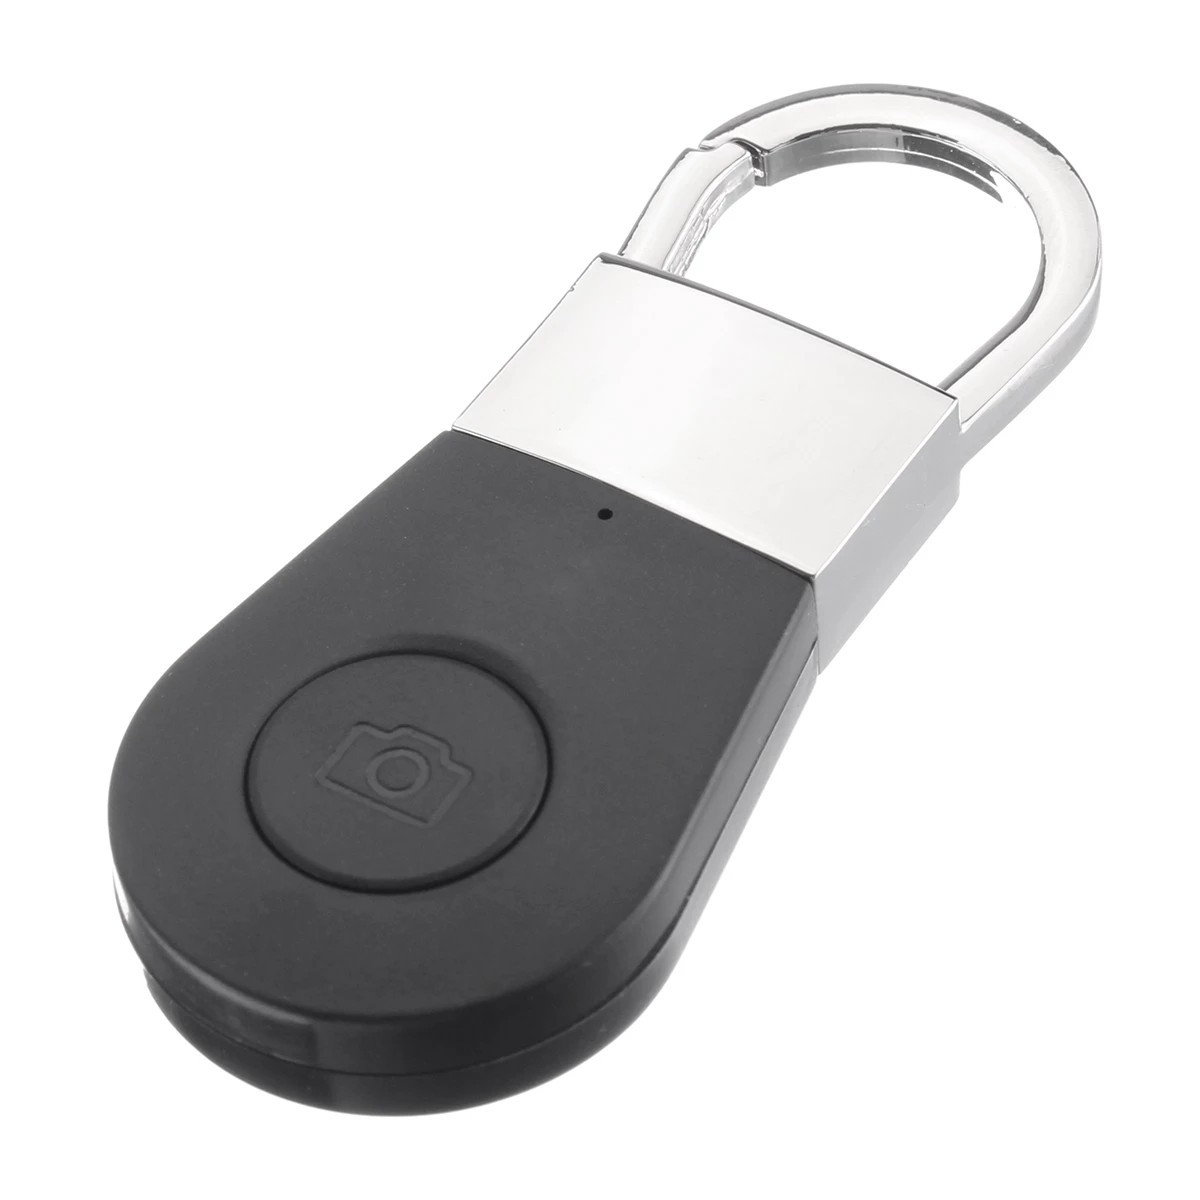 Key finder - bluetooth finder για κλειδιά, κινητό κ.λπ